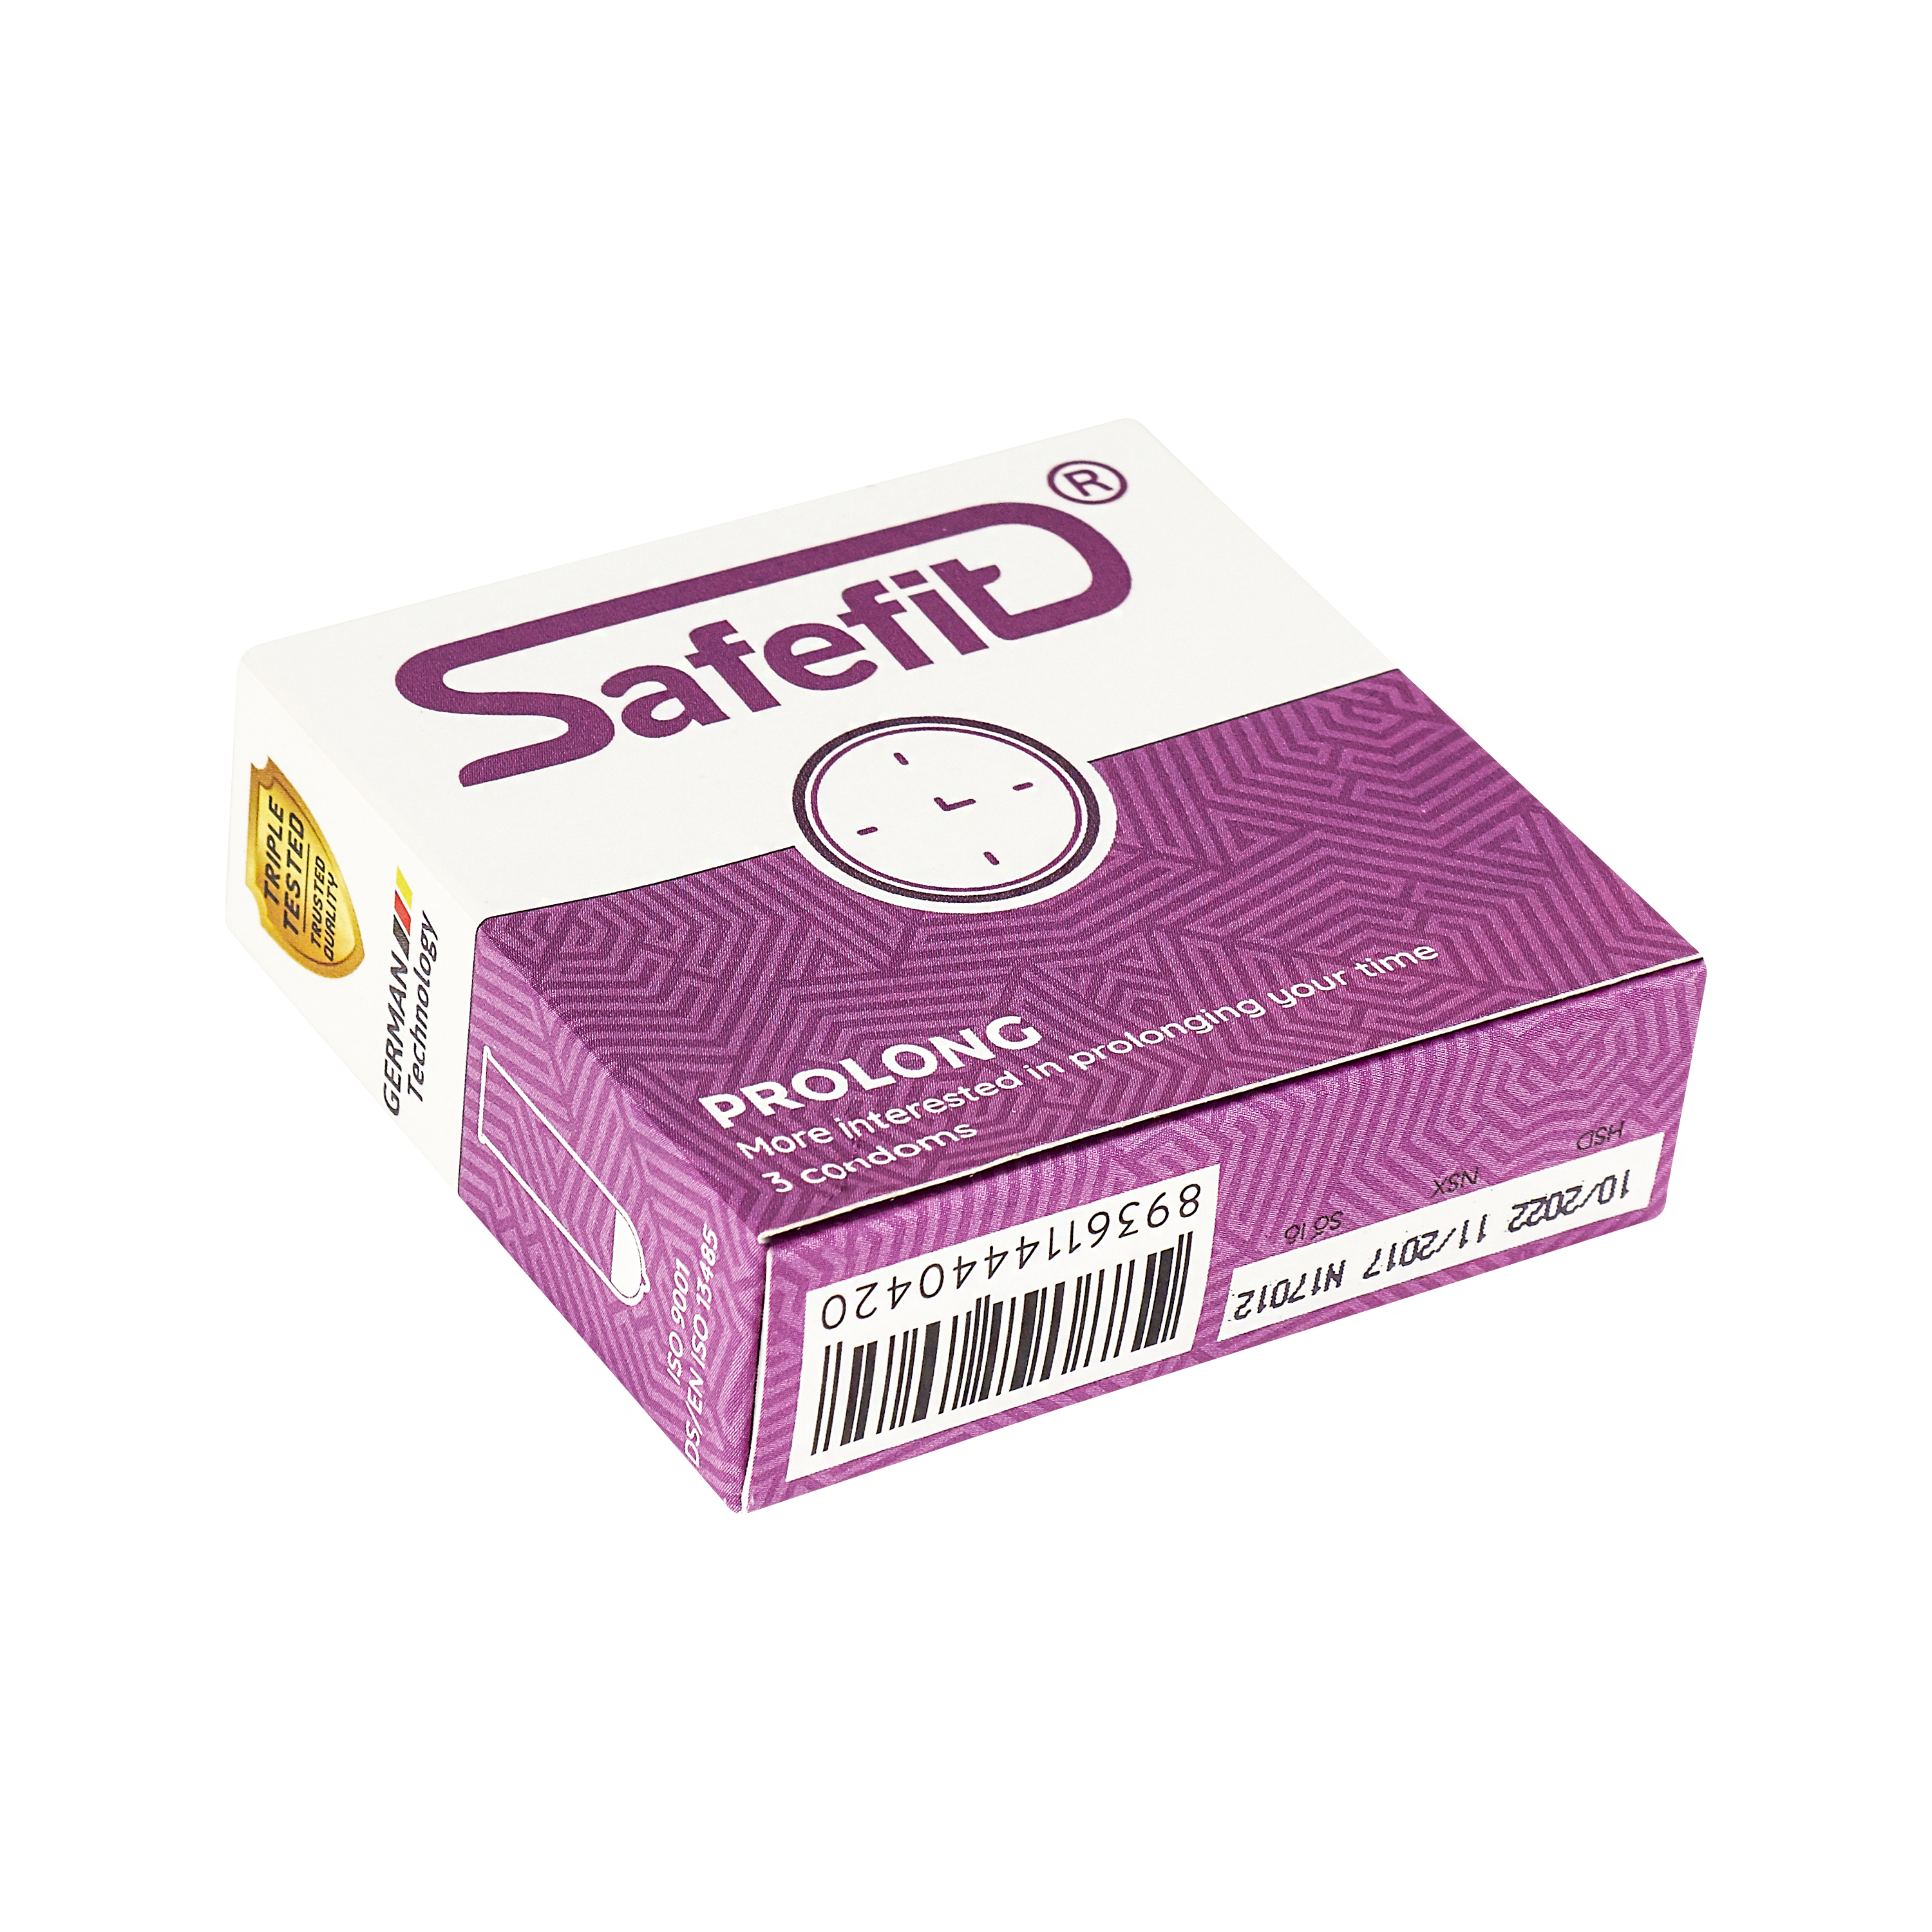 Bộ 3 bao cao su Safefit siêu mỏng kéo dài thời gian Prolong - hộp 3 chiếc